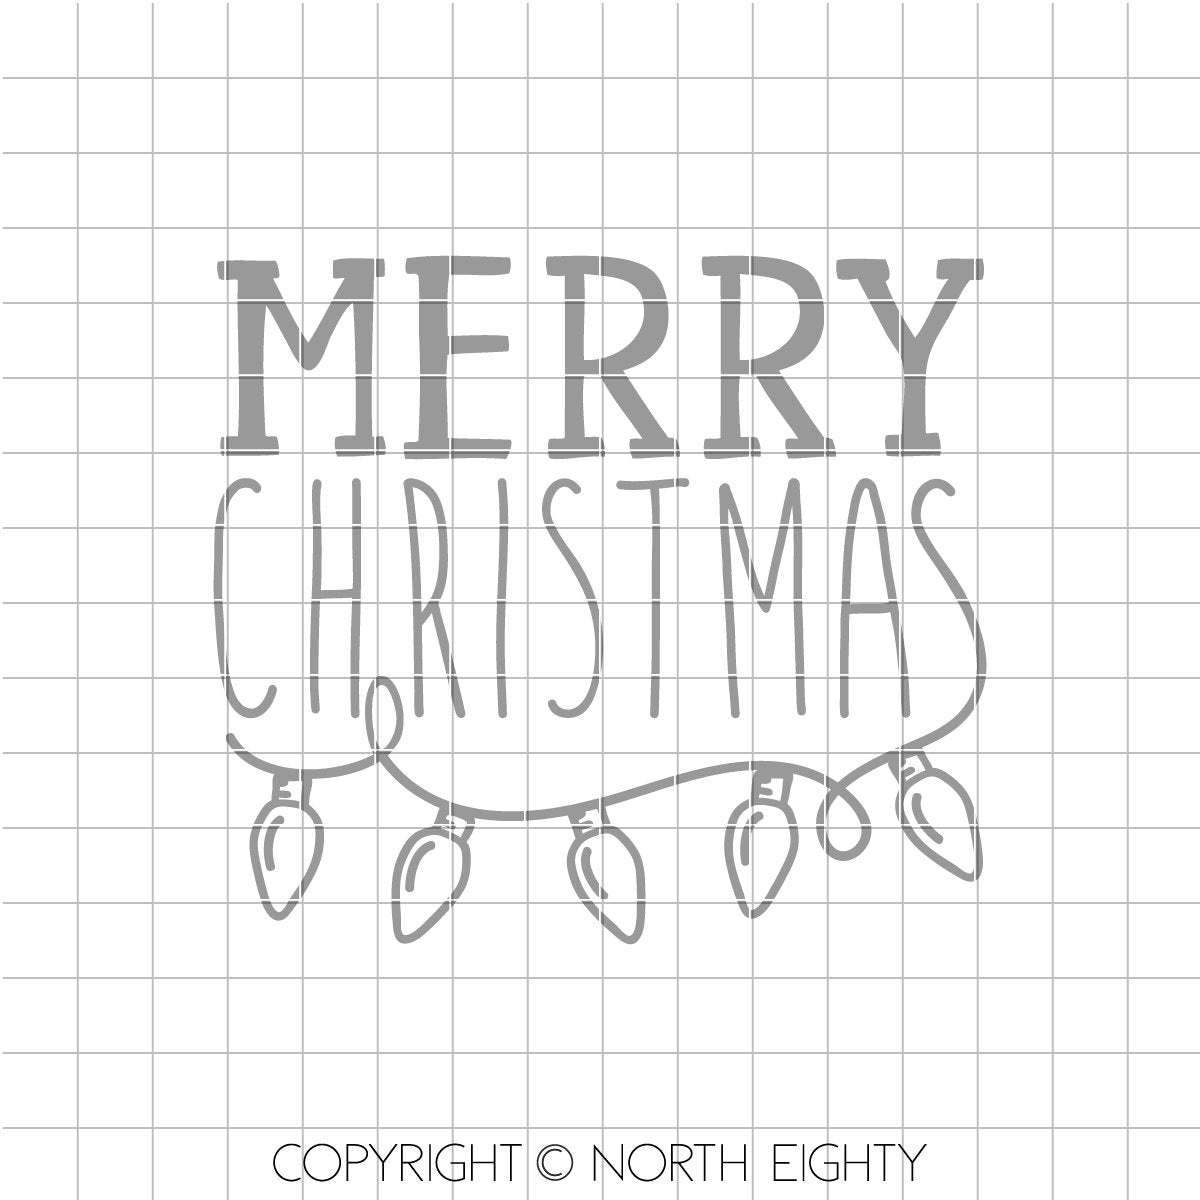 Merry Christmas svg - Christmas lights cut file - Christmas lights bulb dxf - Merry Christmas Lights cut file - Christmas svg - vector art